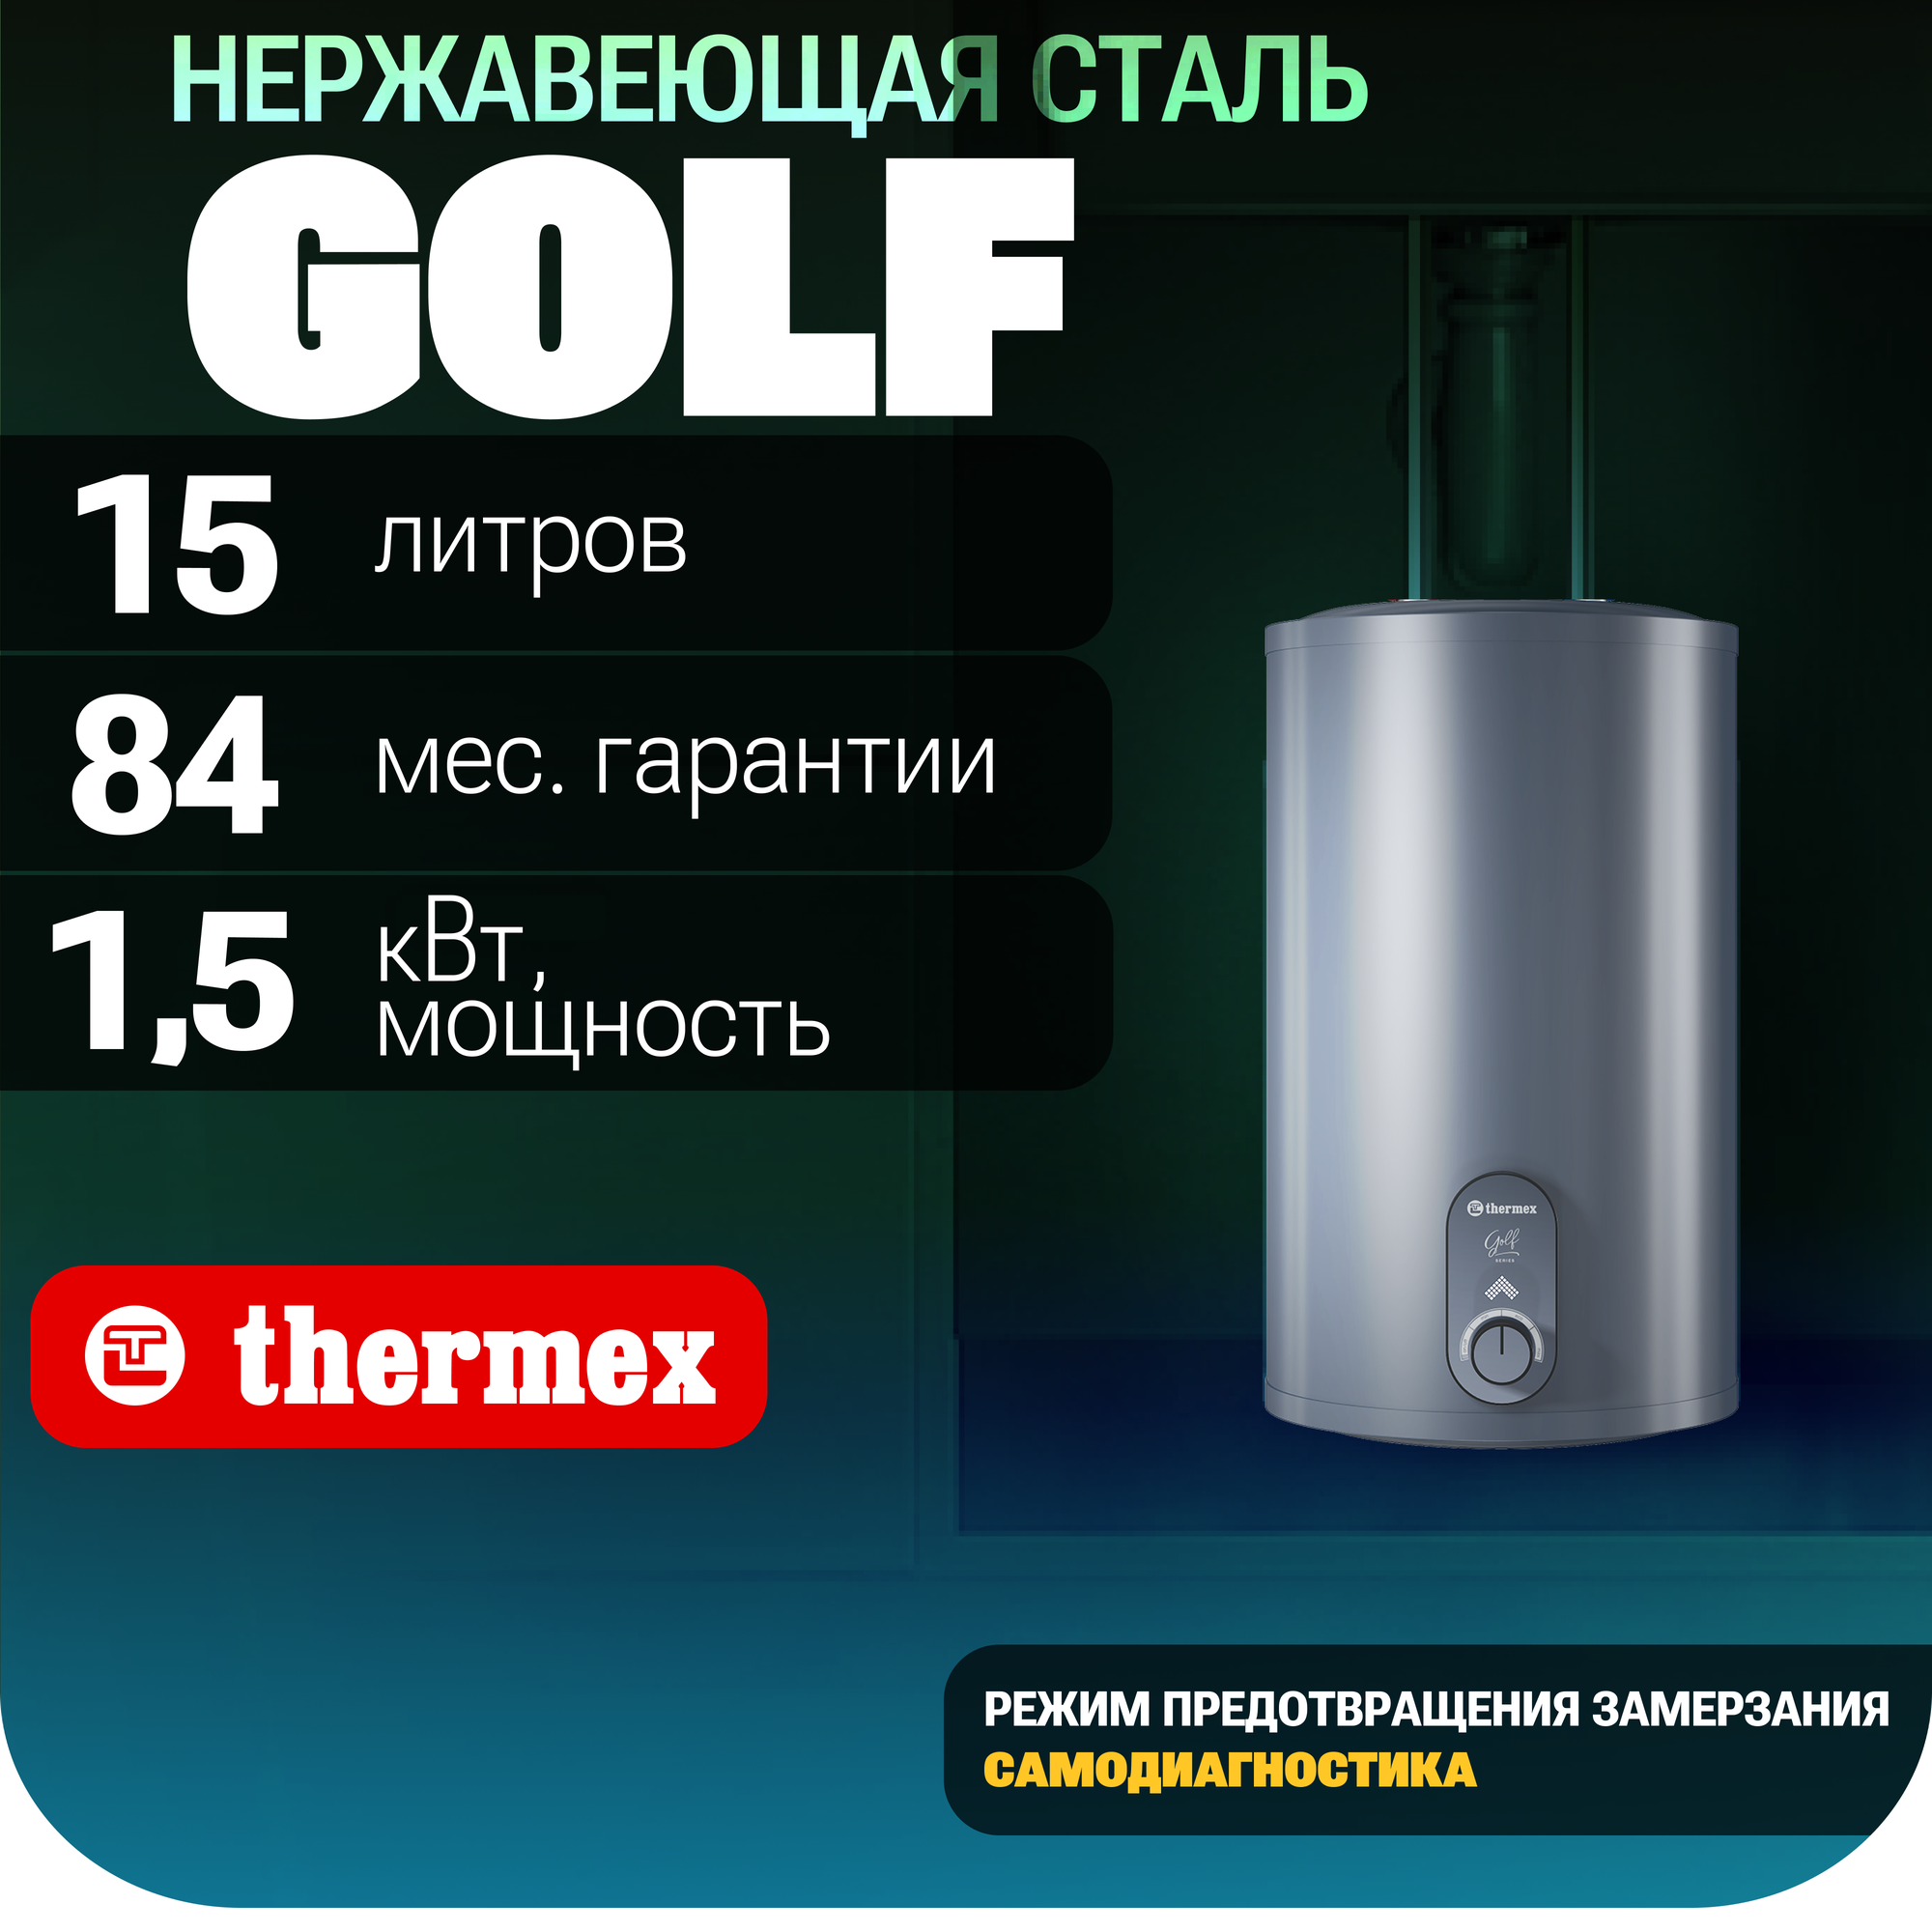 Водонагреватель THERMEX Golf 15 U